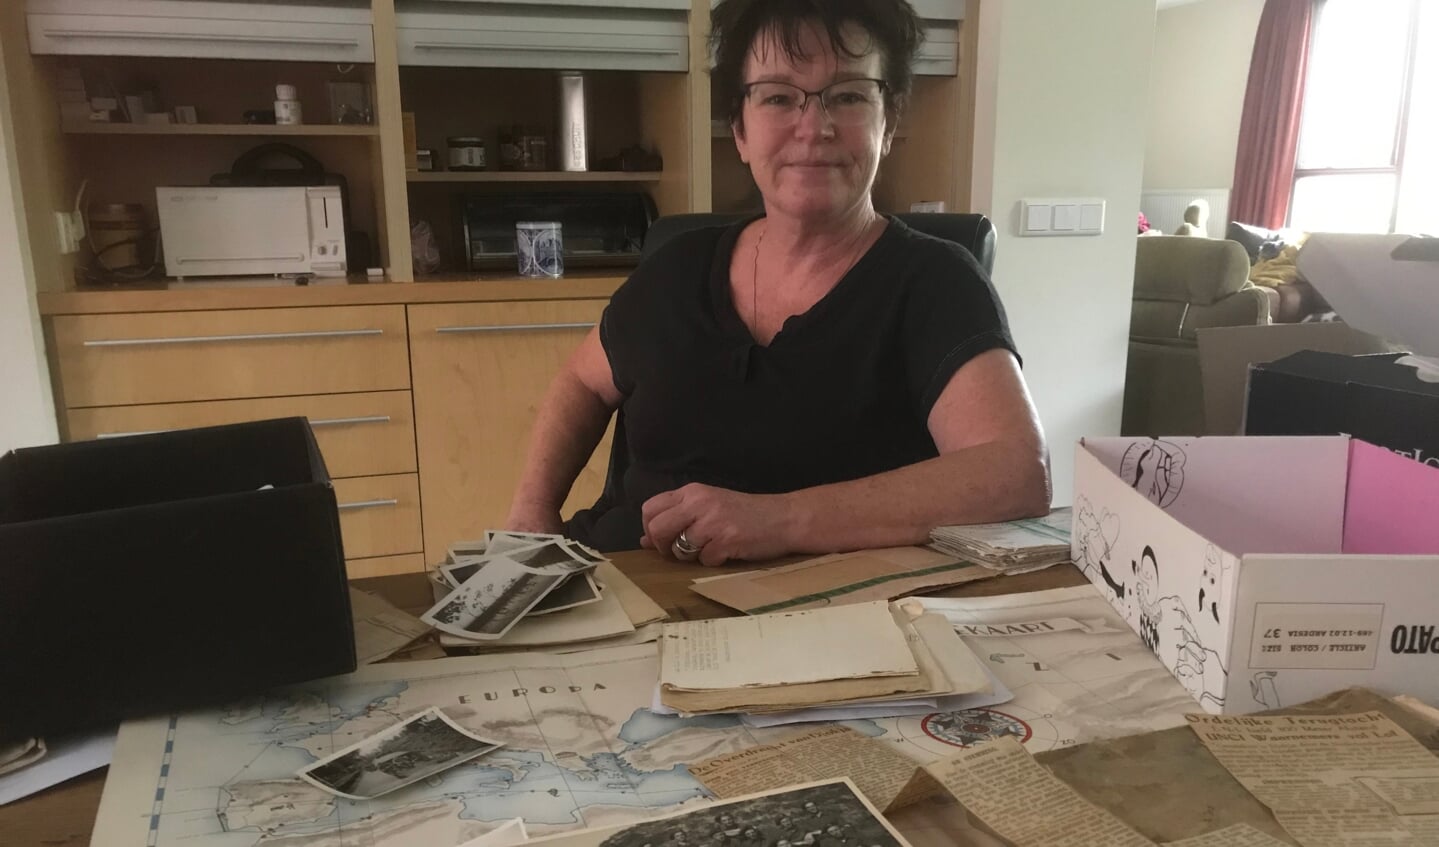 HIlma Bruinsma temidden van de brieven en foto's van haar vader